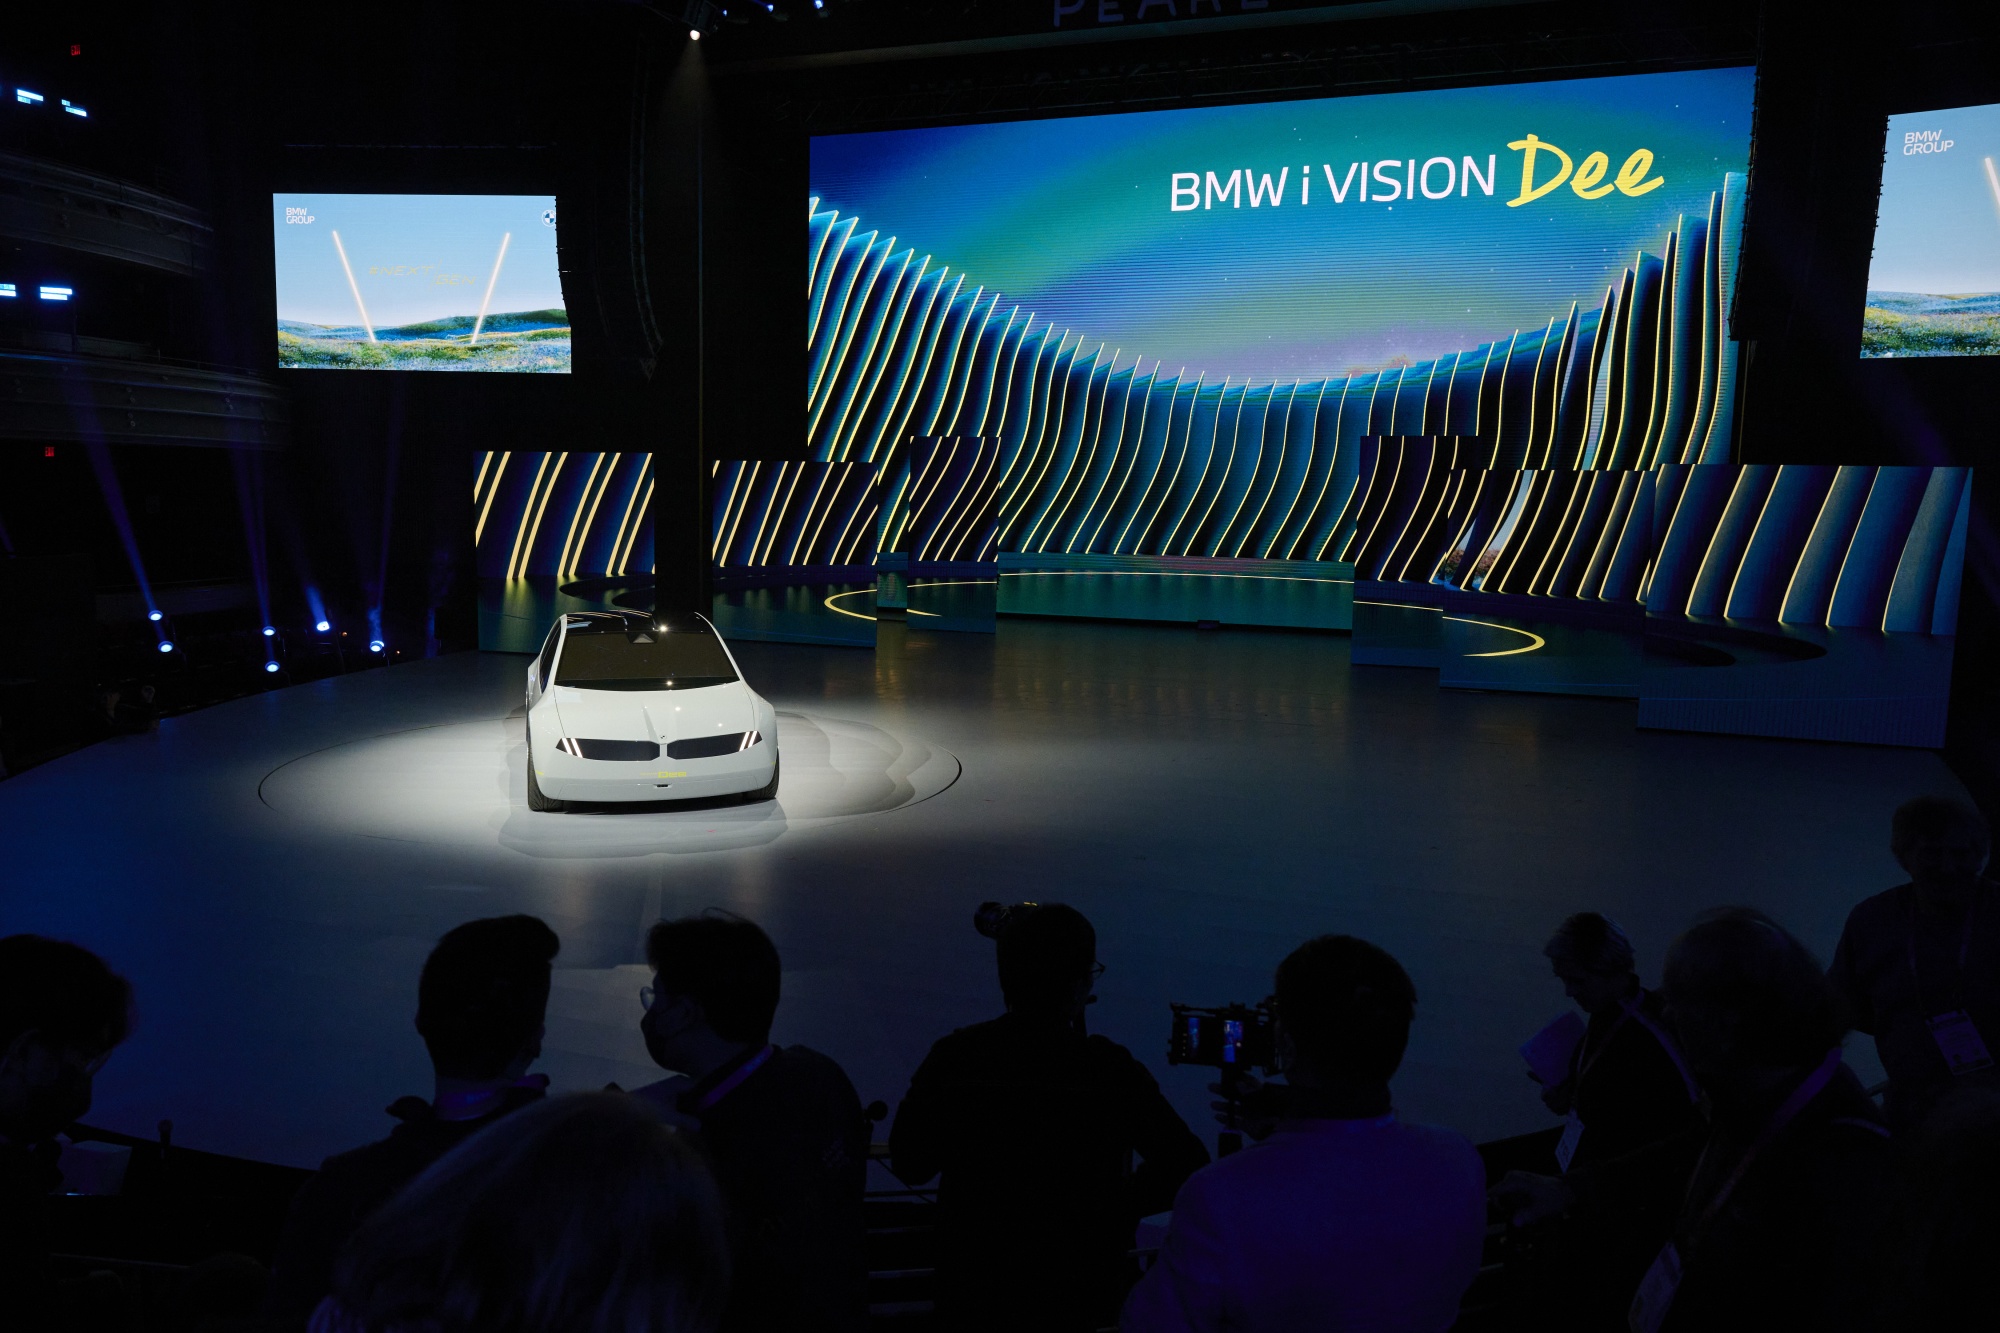 BMW nimmt Anleihen bei Apple mit radikaler Innenraum-Gestaltung - Bloomberg